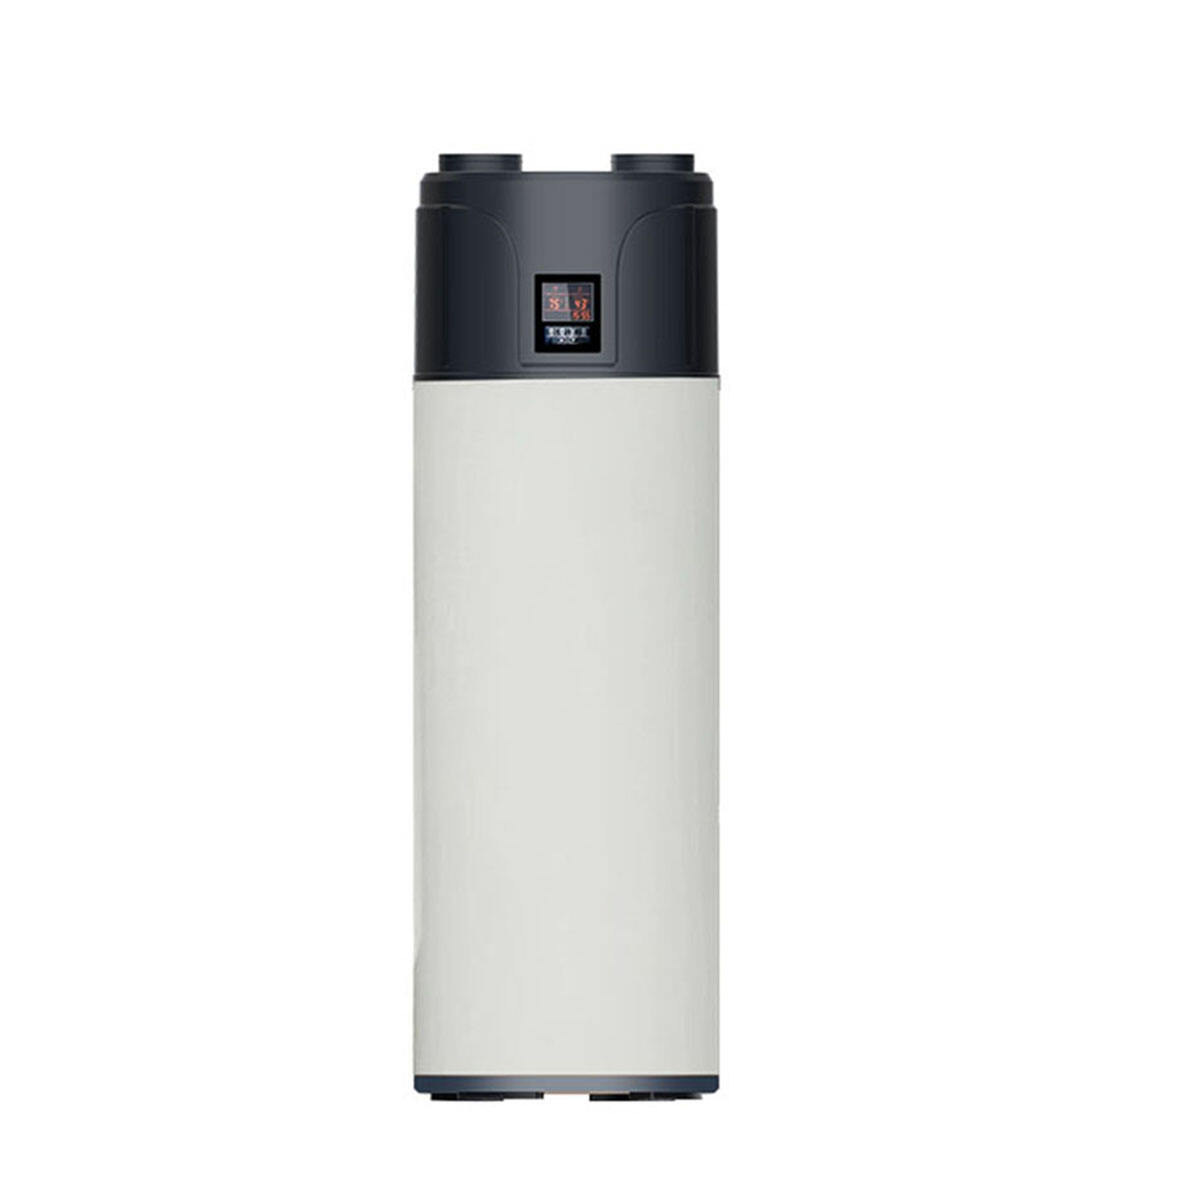 R290 ပြည်တွင်းတွင် All in one hot water heat pump air source ပေးသွင်းသည်။